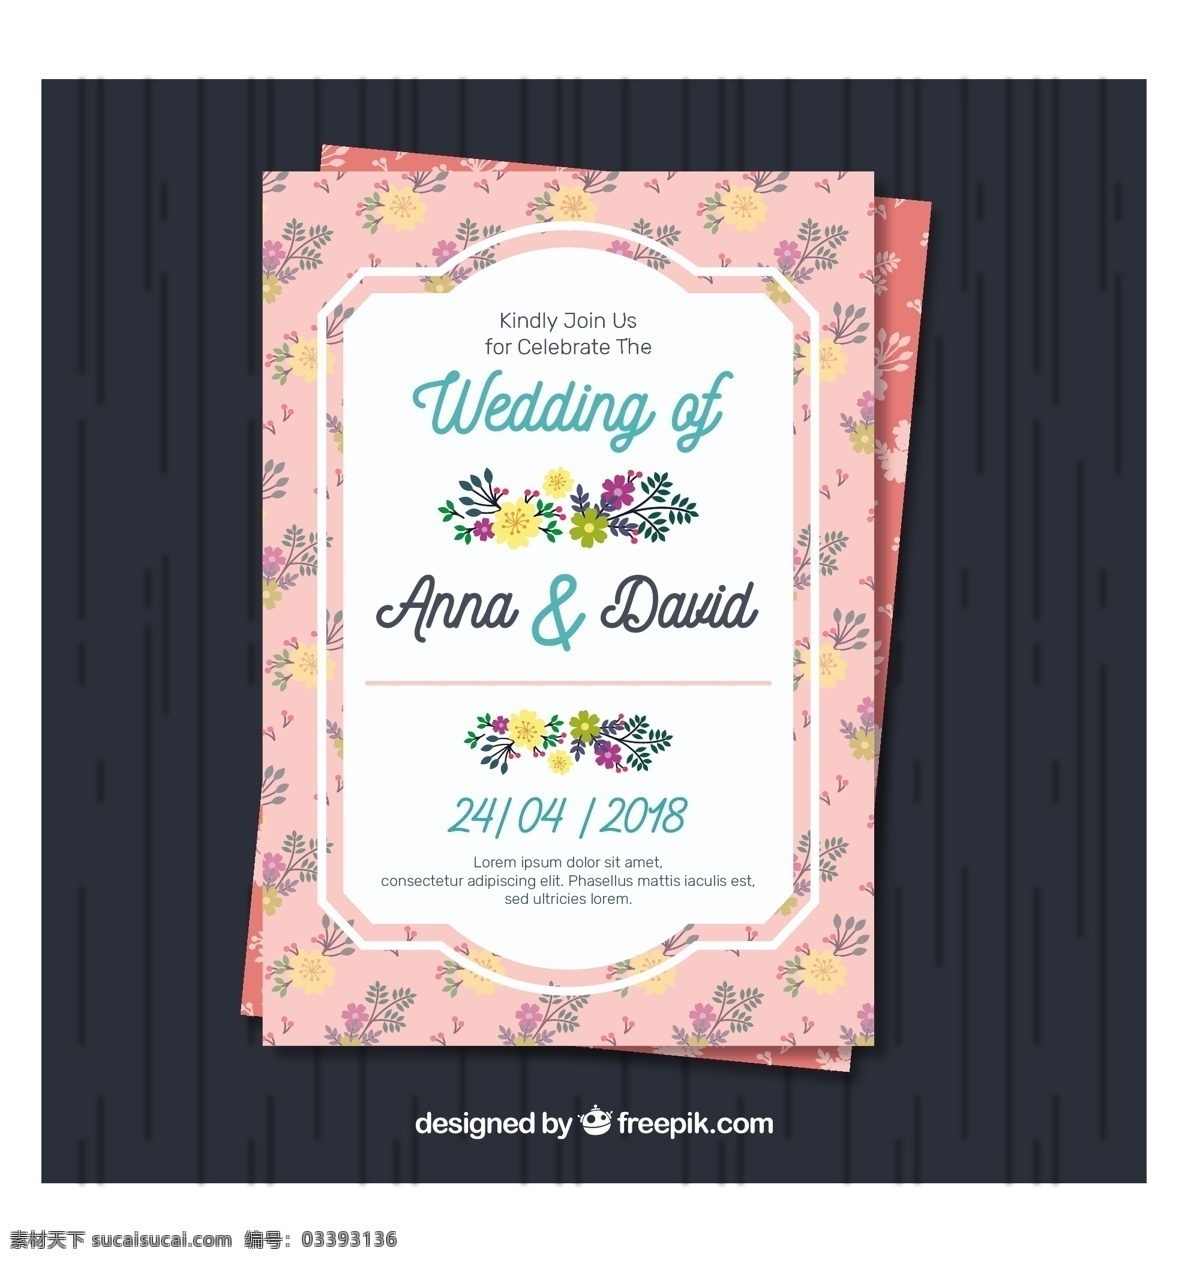 漂亮 花卉 装饰 边框 婚礼 邀请 卡 漂亮的 花卉装饰边框 婚礼邀请卡